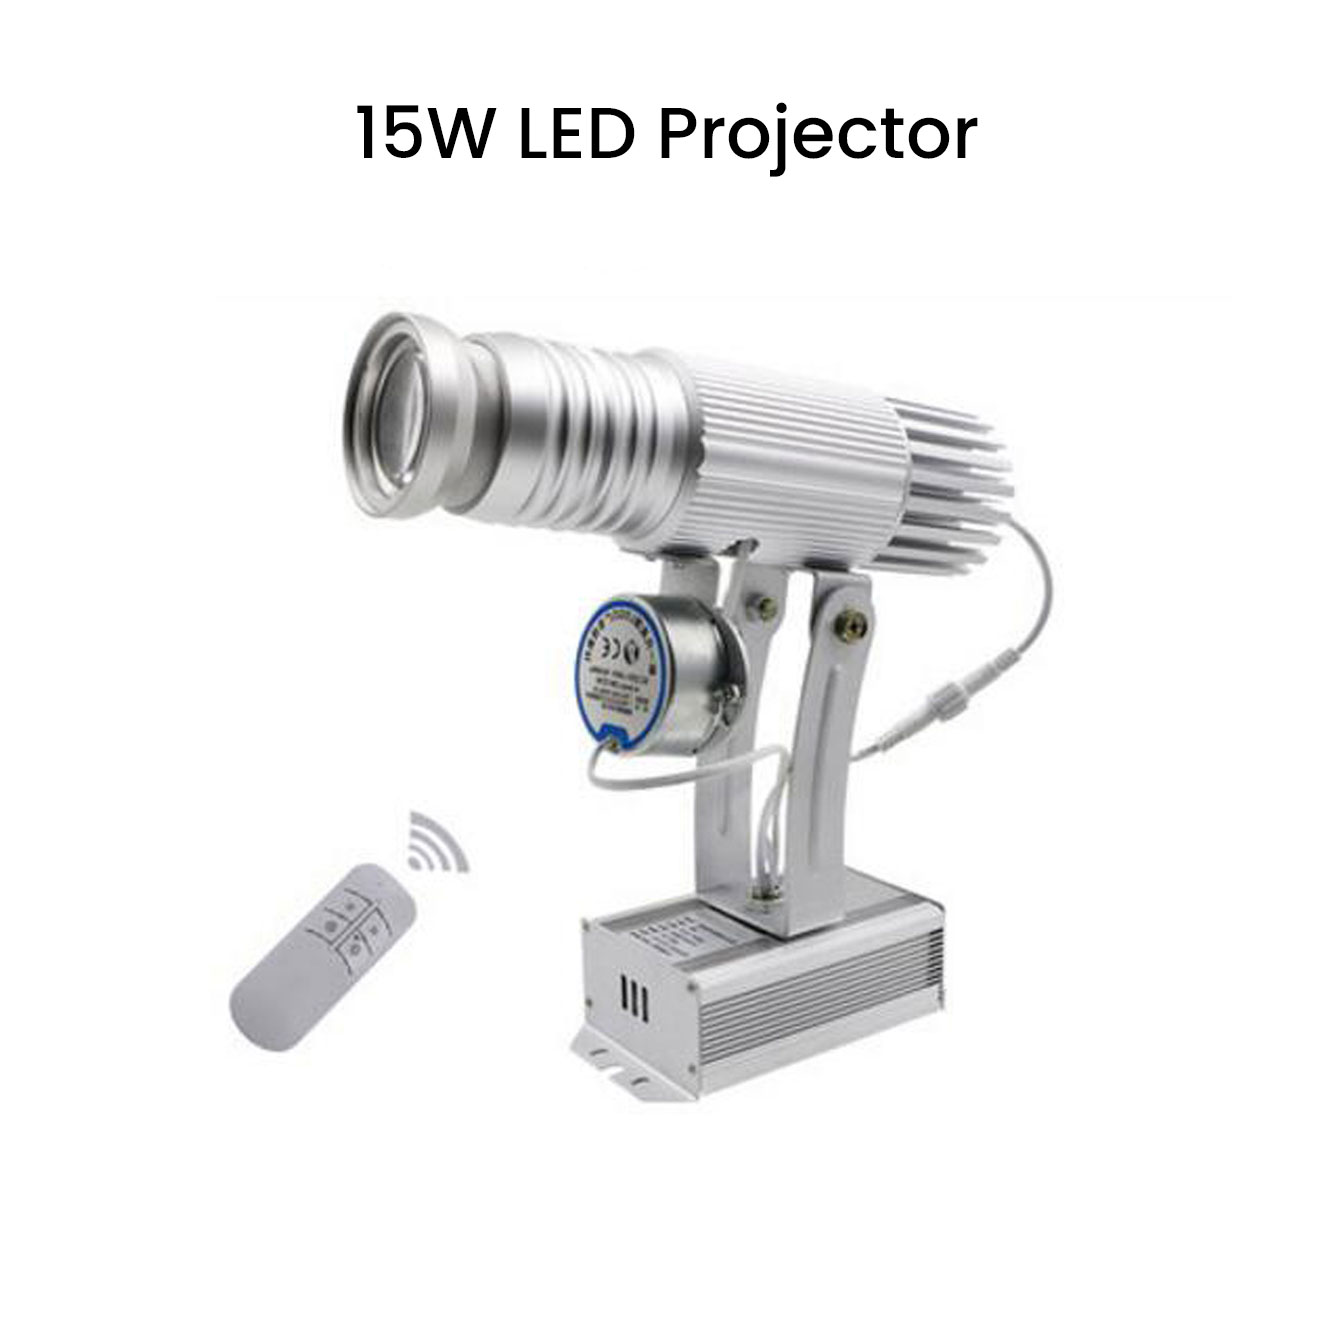 https://bigbanner.com.au/wp-content/uploads/2020/01/Advertising-LED-Logo-Projector-Lights-4.jpg